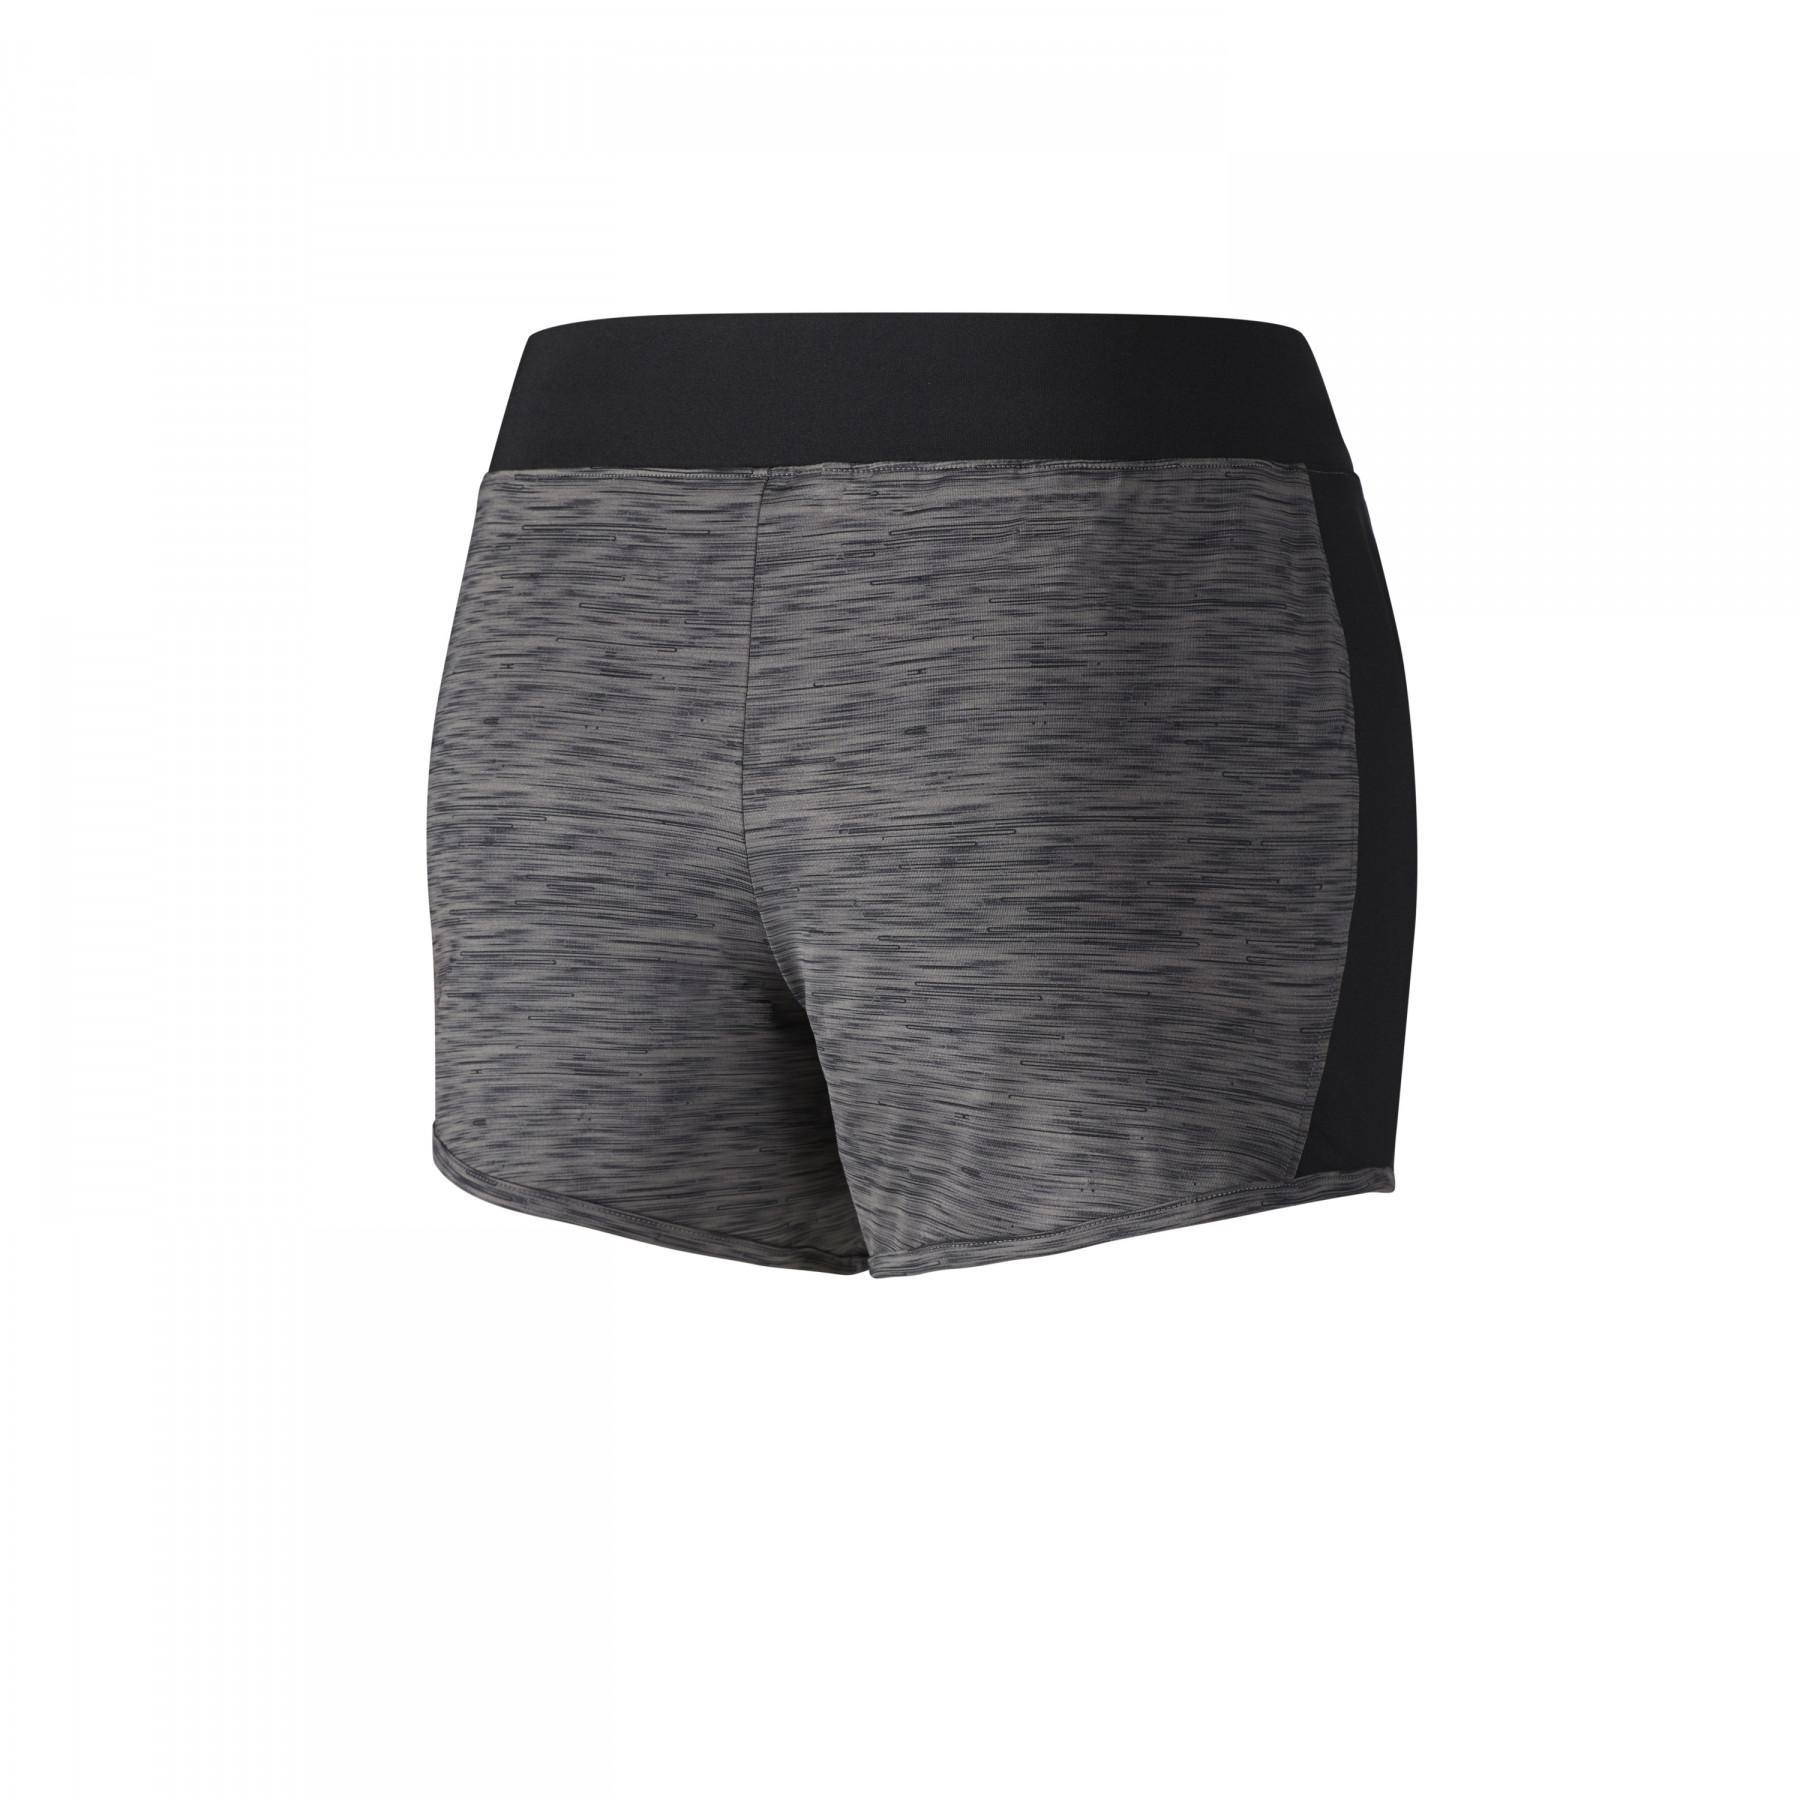 Women's shorts Mizuno Lyra 5.5